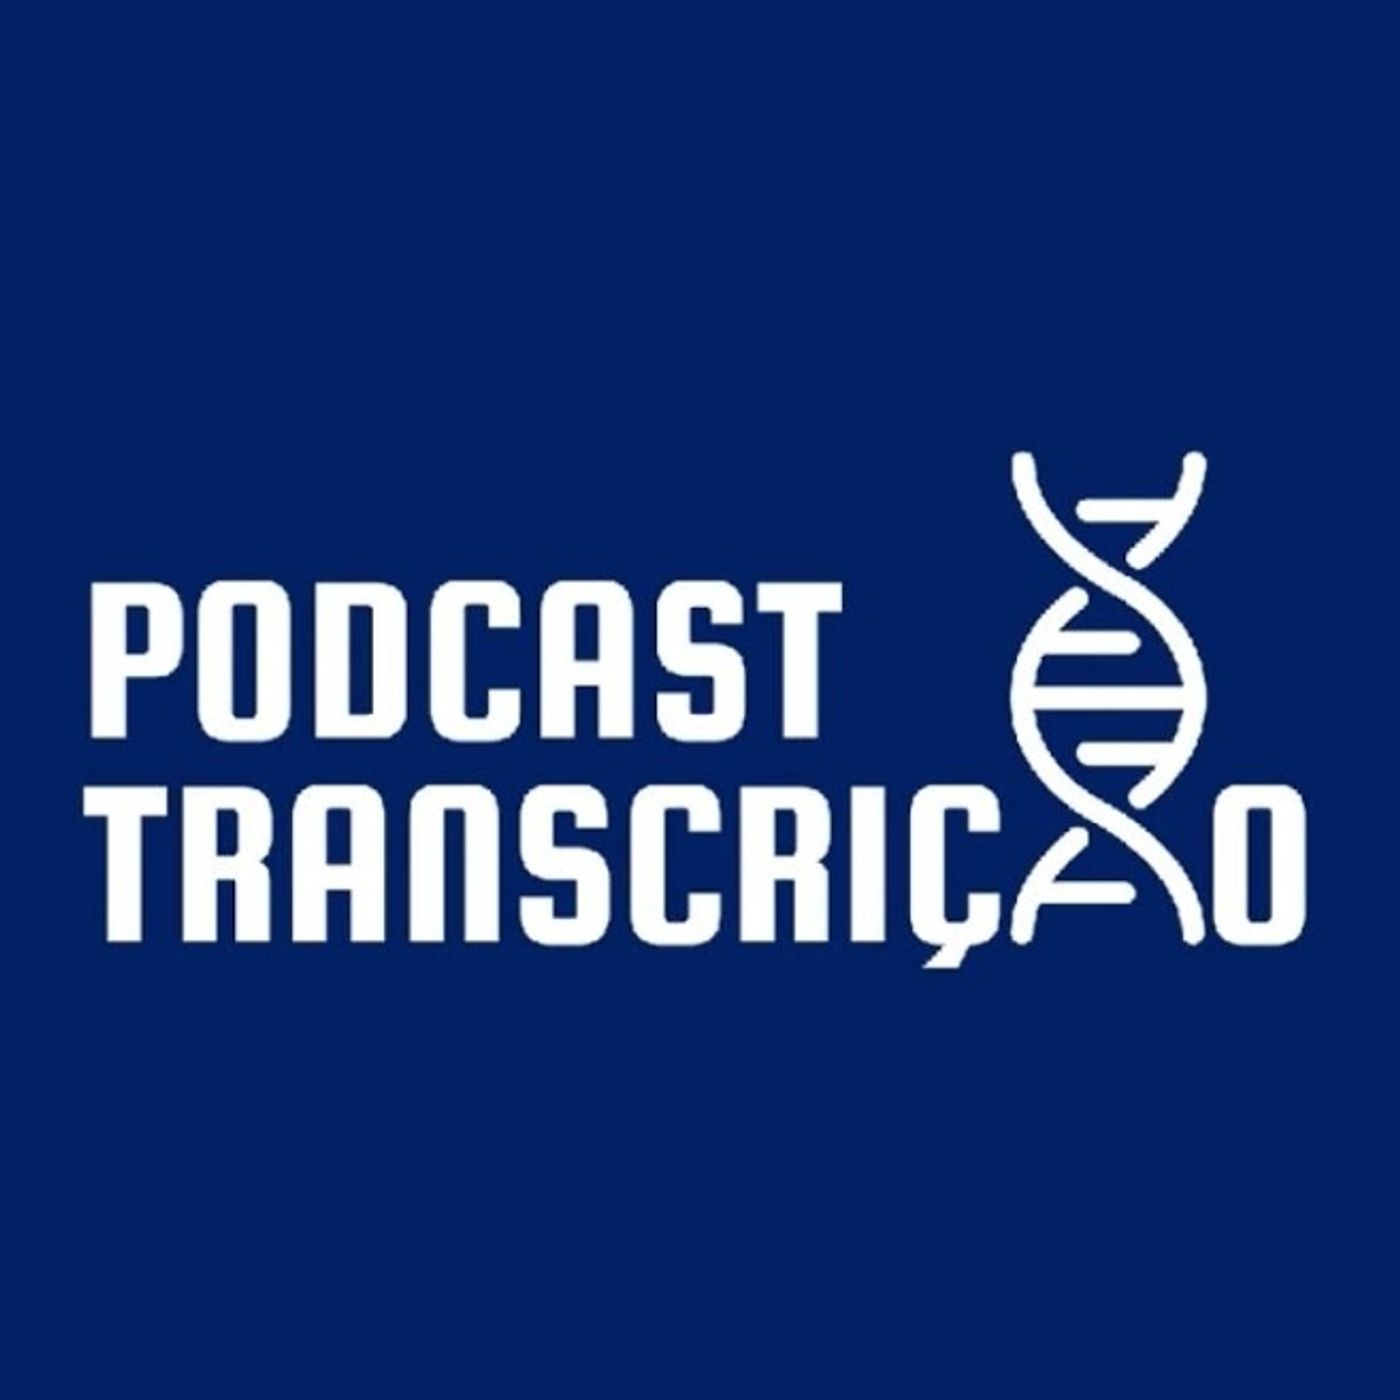 Podcast Transcrição